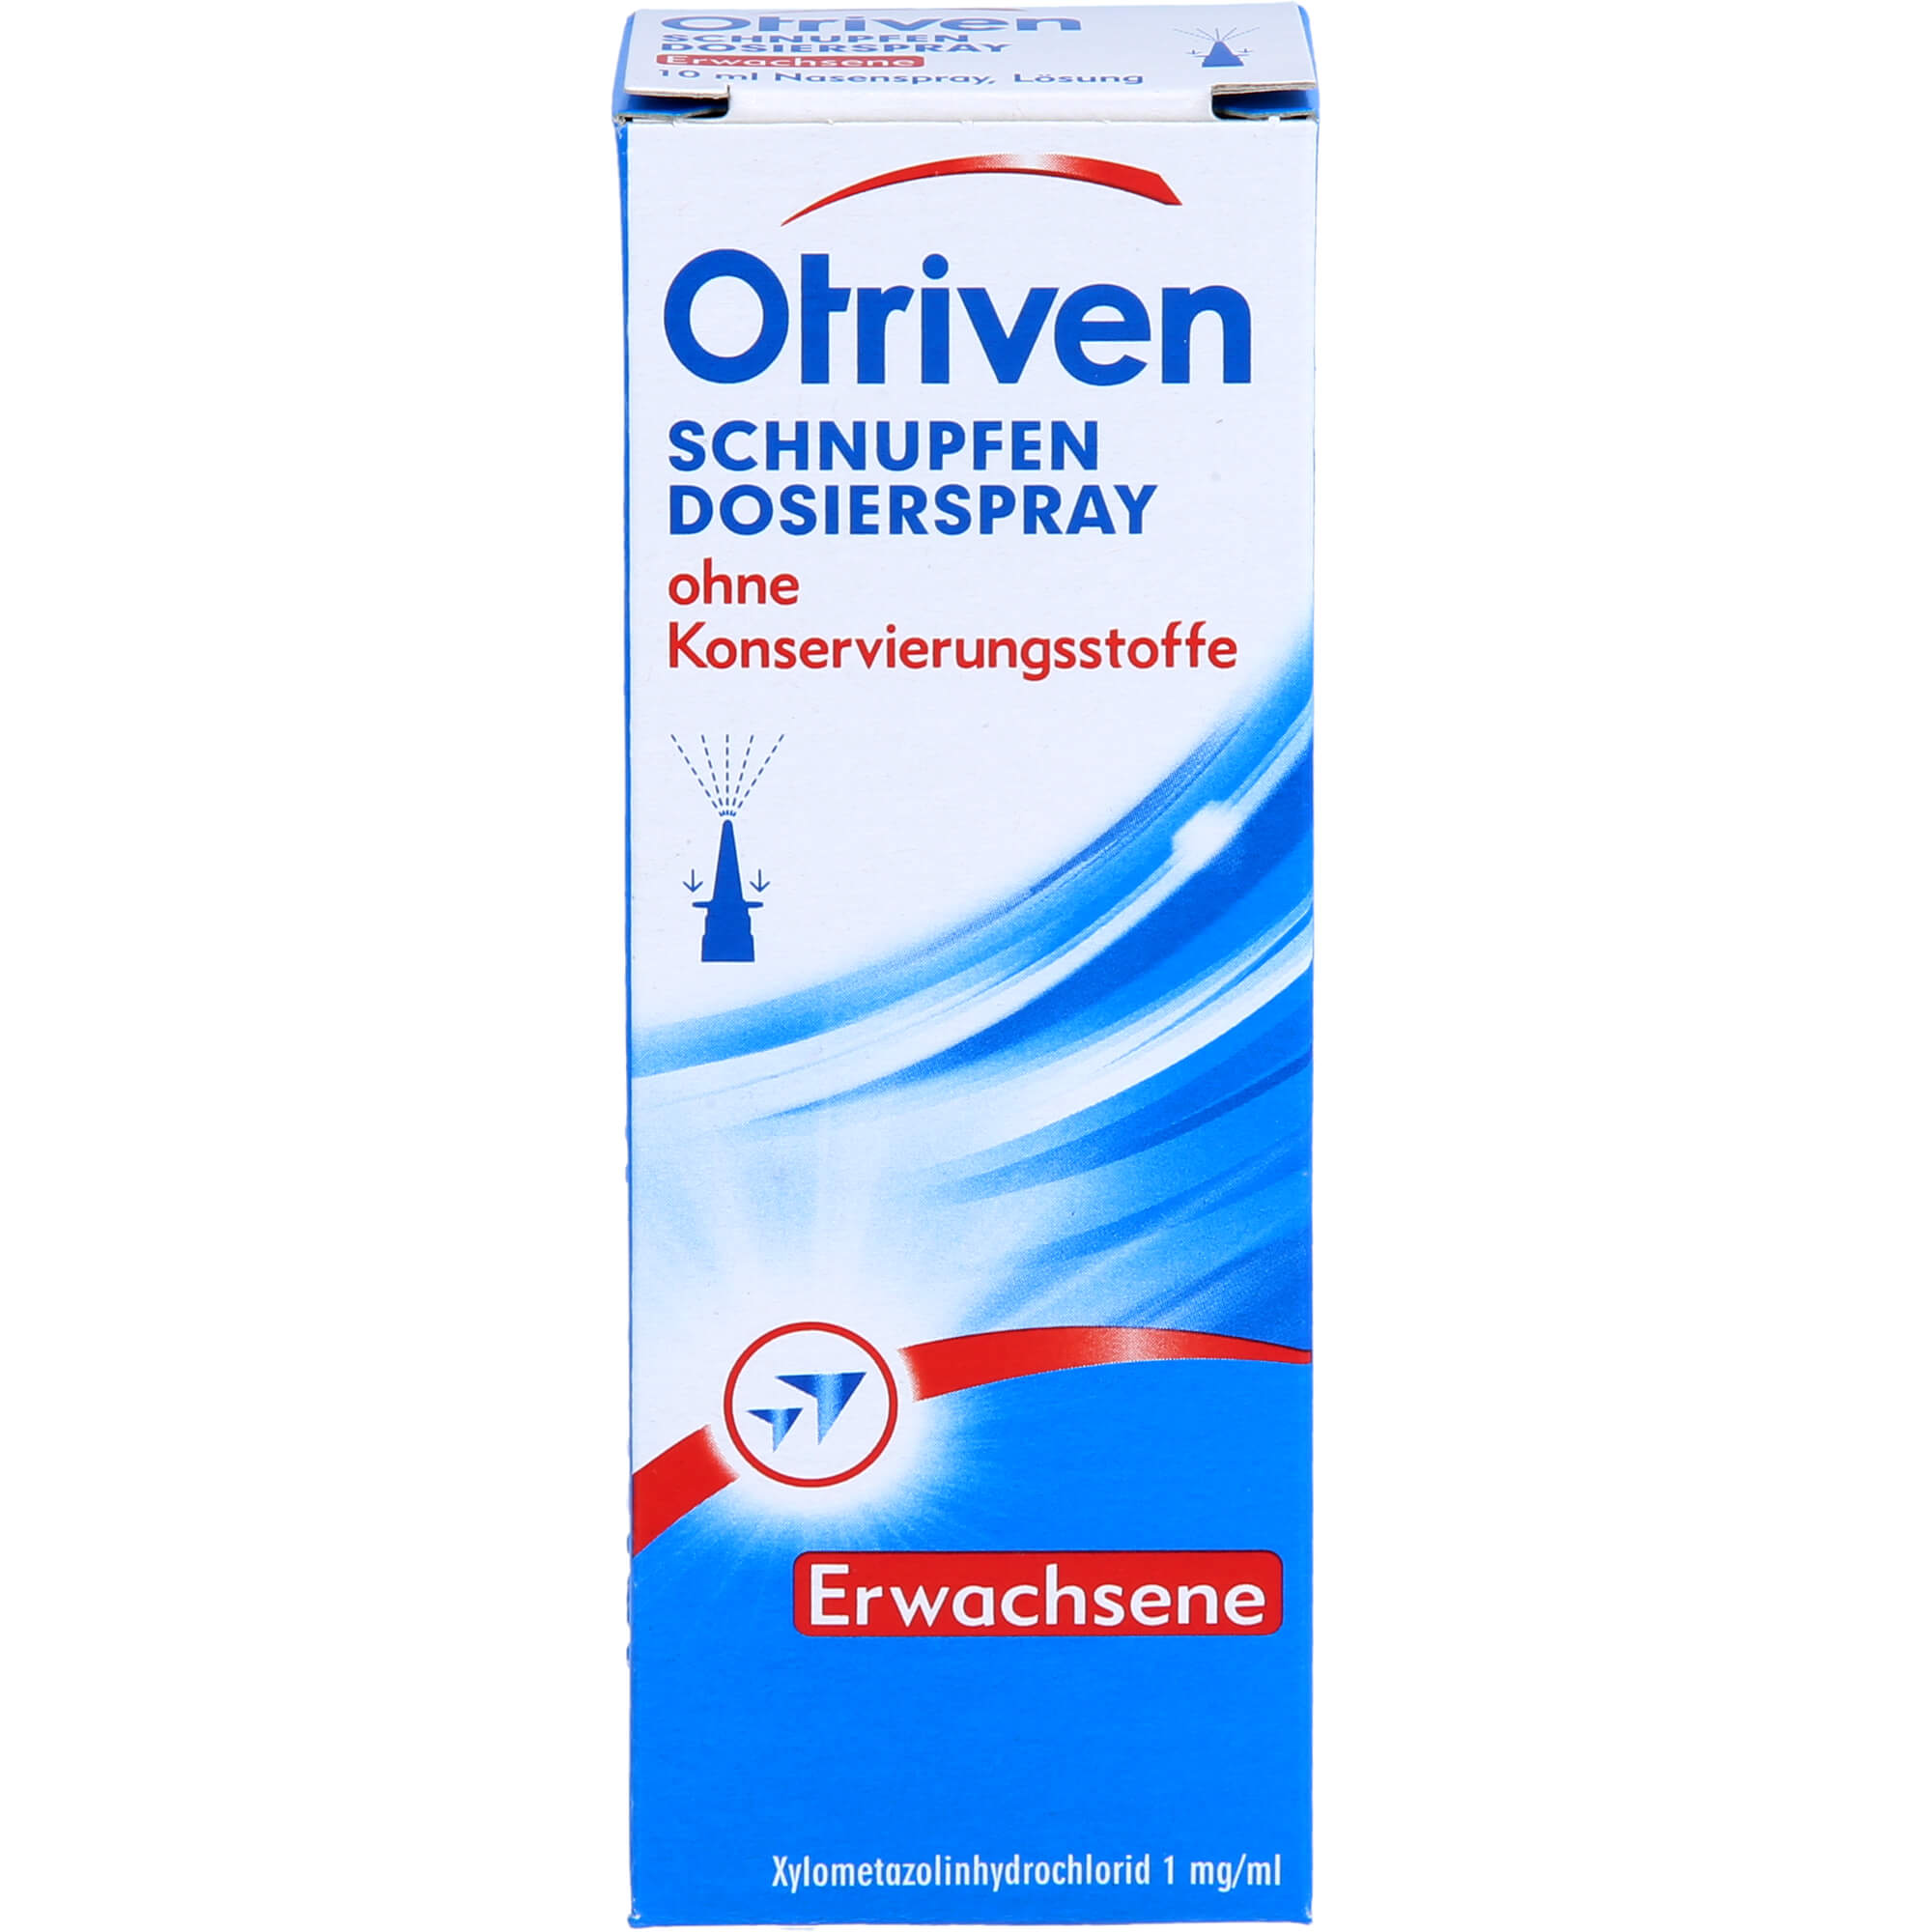 OTRIVEN-0-1-Dosierspray-ohne-Konserv-Stoffe